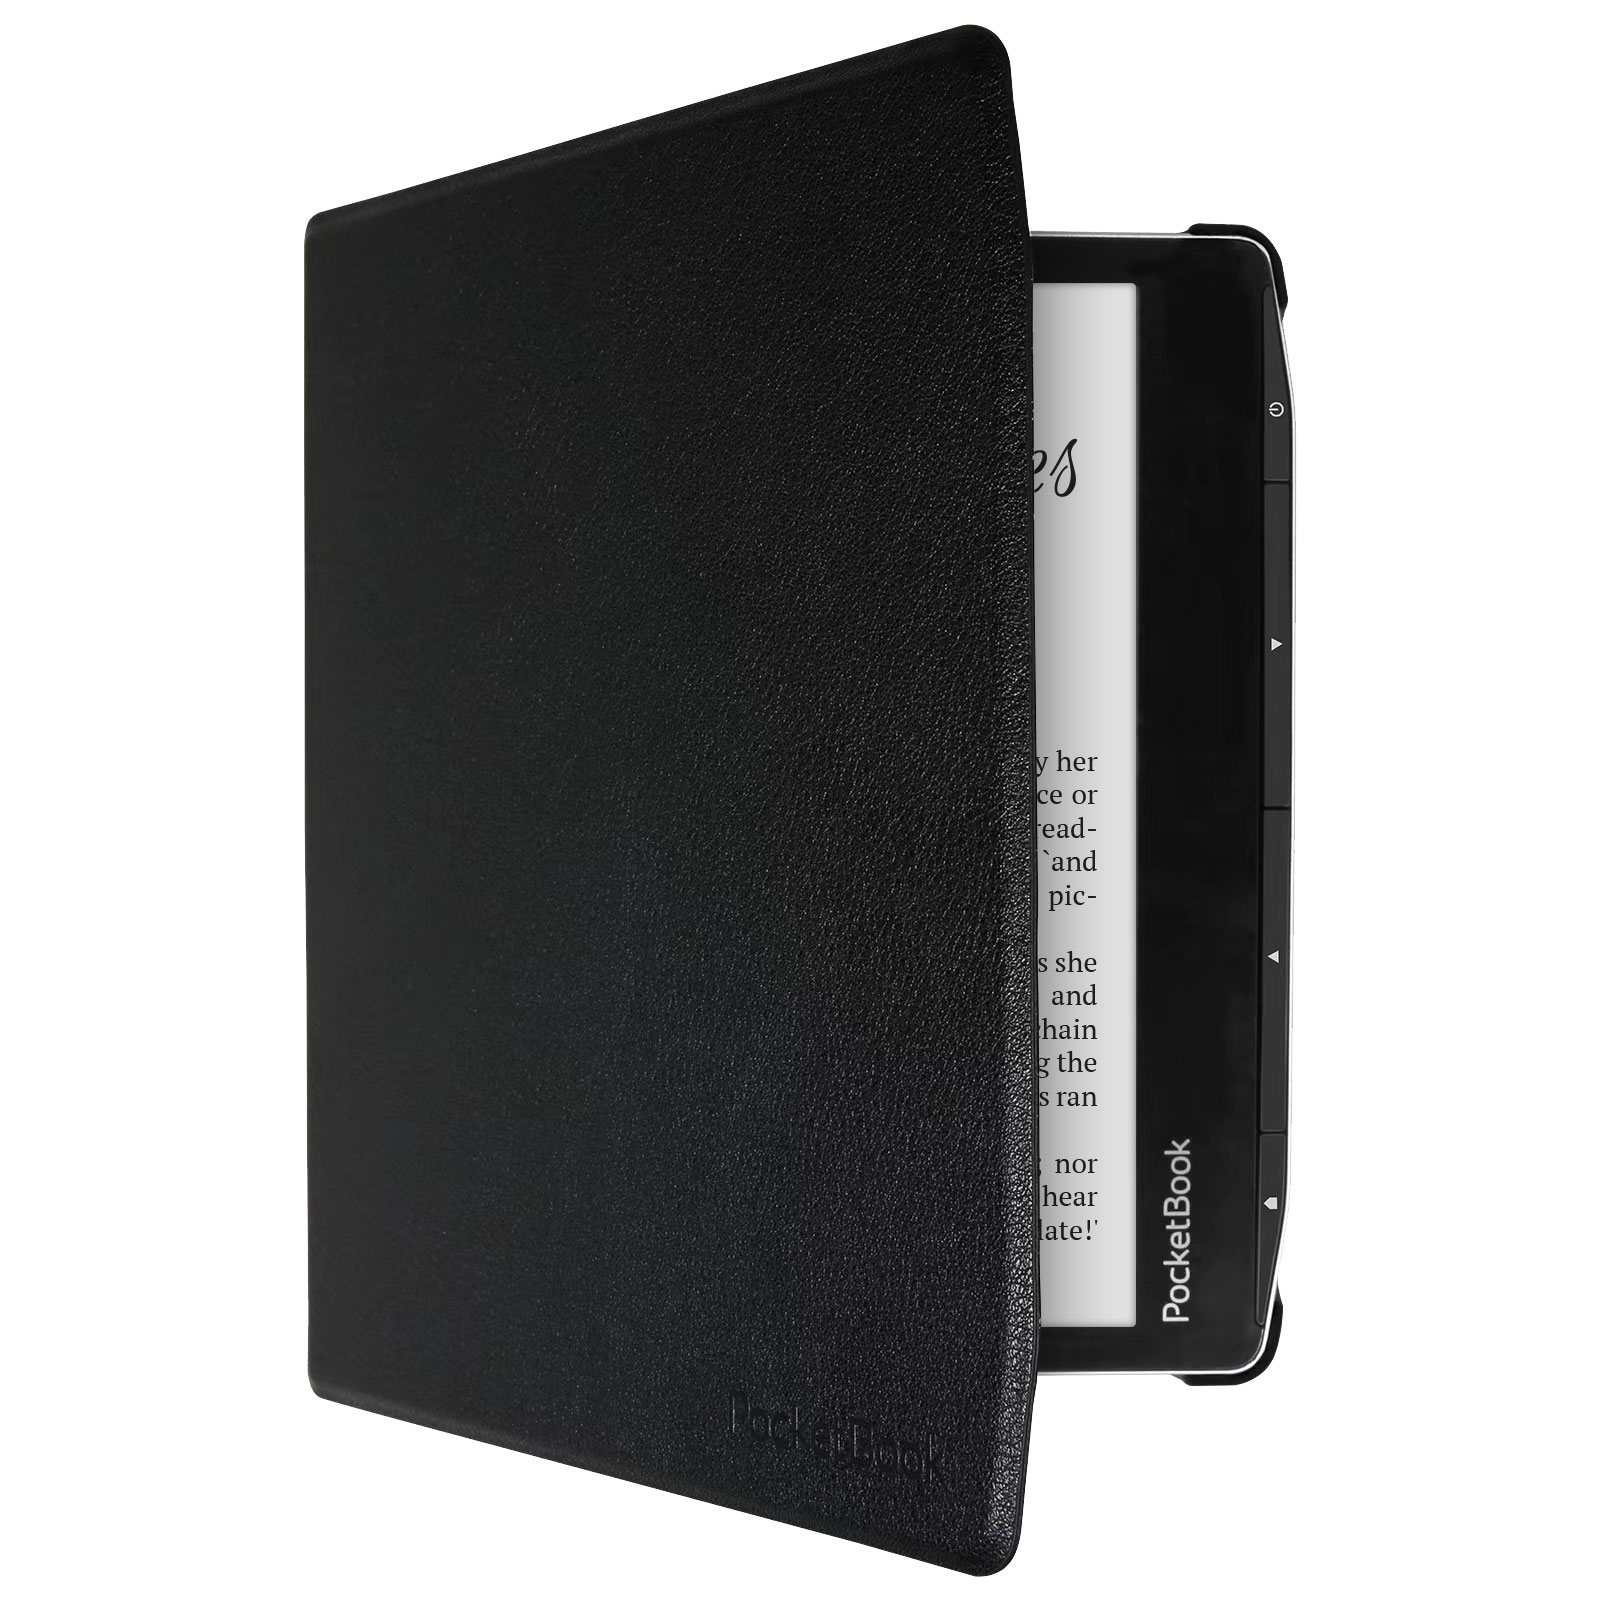 Чехол для электронной книги Pocketbook Era Shell Cover black (HN-SL-PU-700-BK-WW) изображение 3